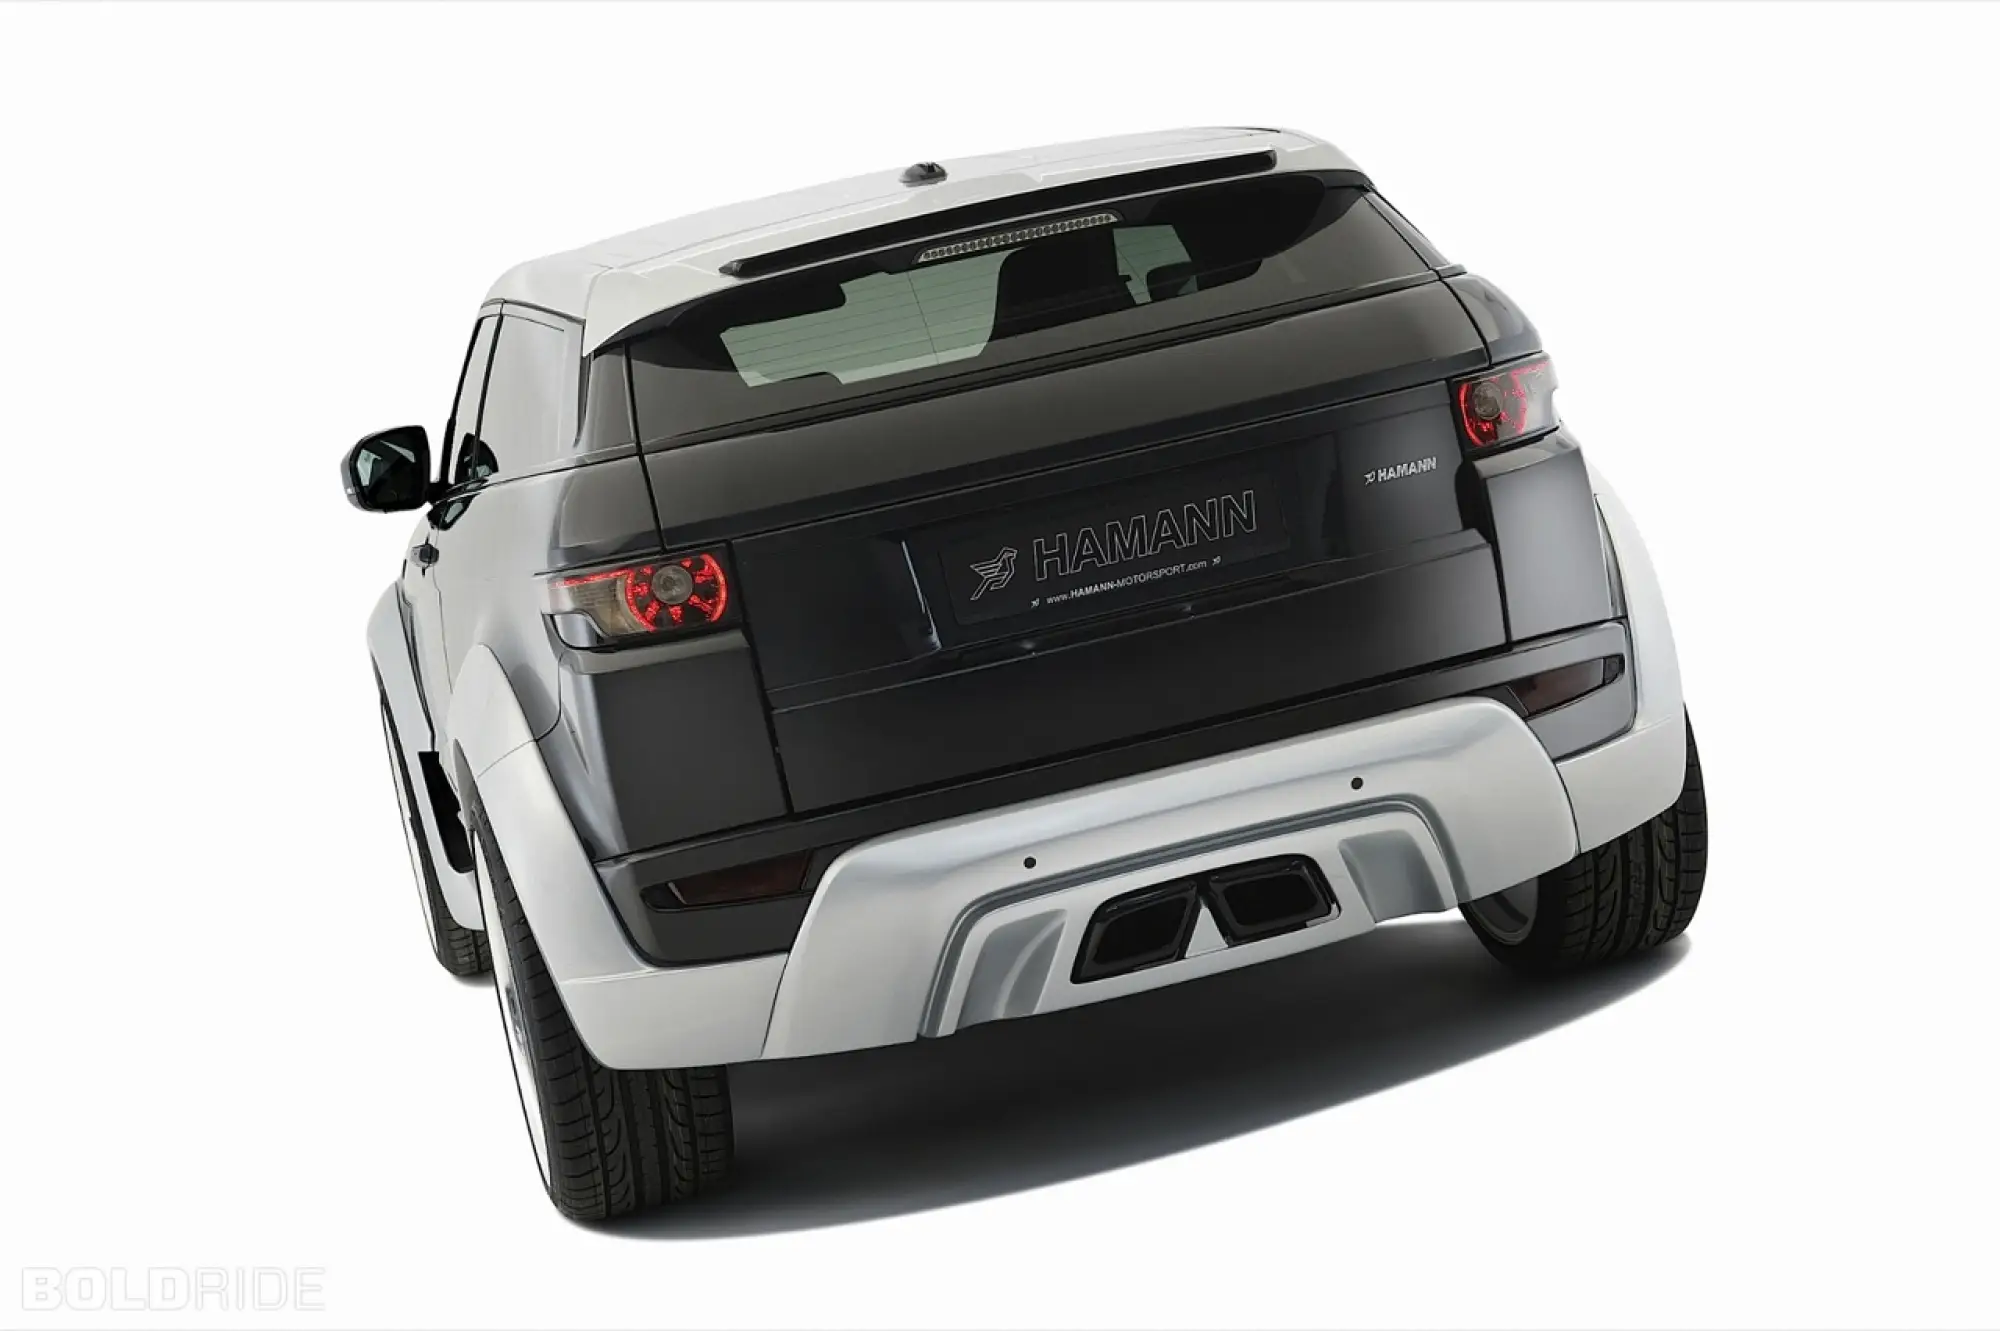 Hamann Range Rover Evoque - Salone di Ginevra 2012 - 8